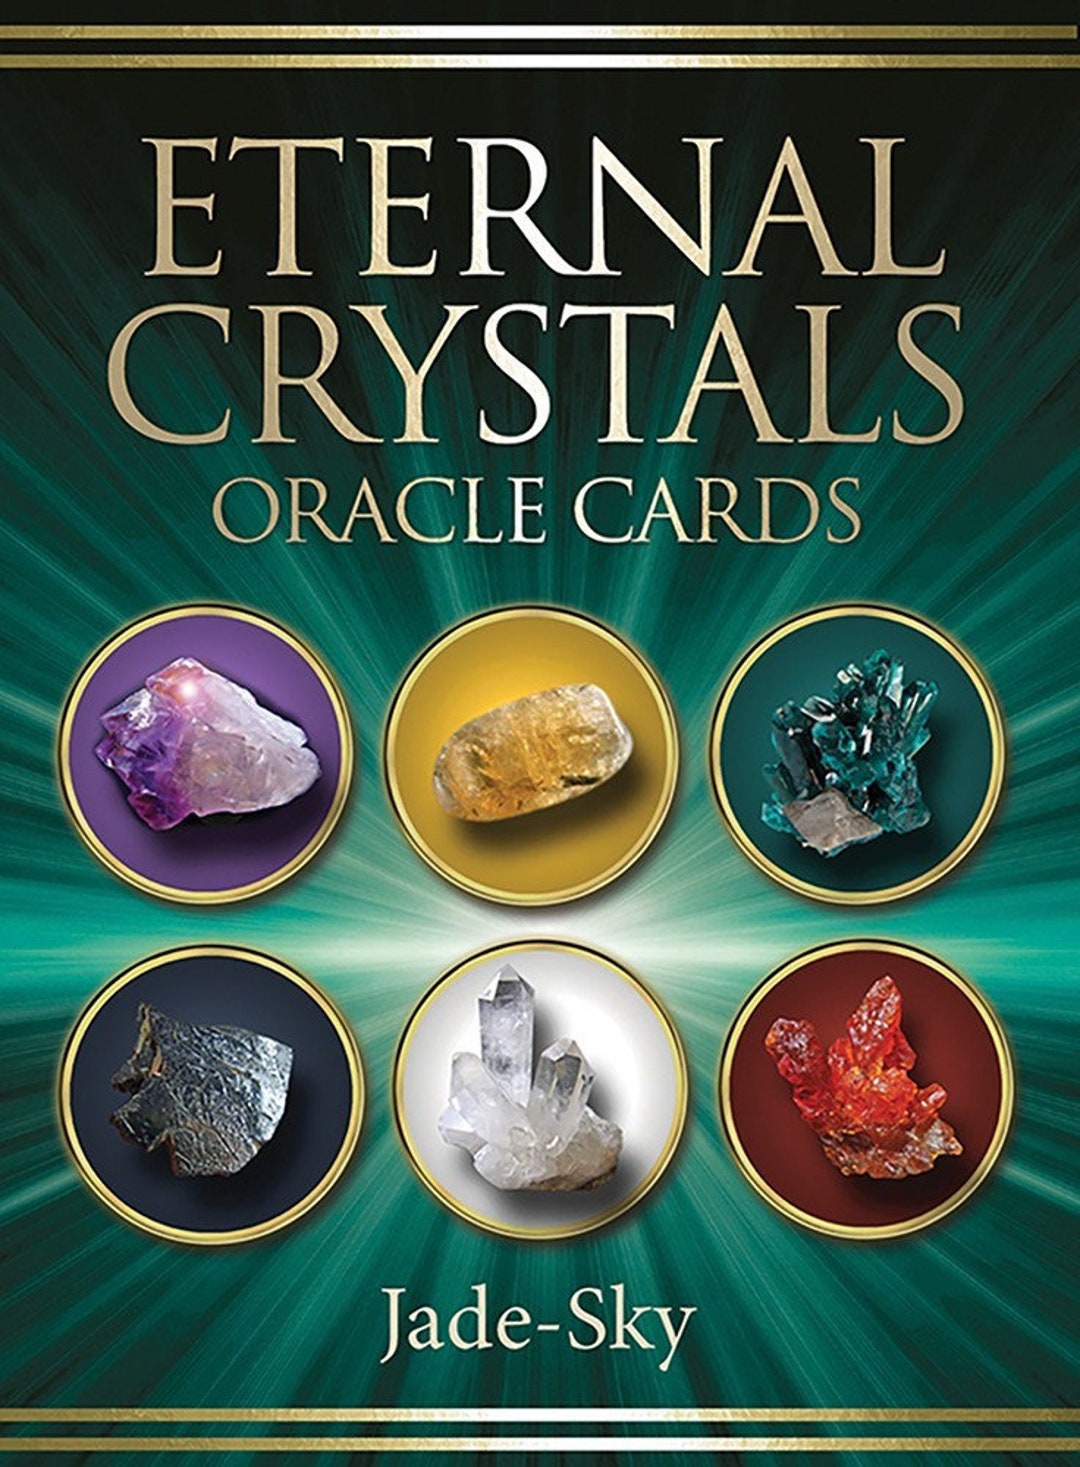 Compra online de Jogos de cartas Oracle de cristais eternos